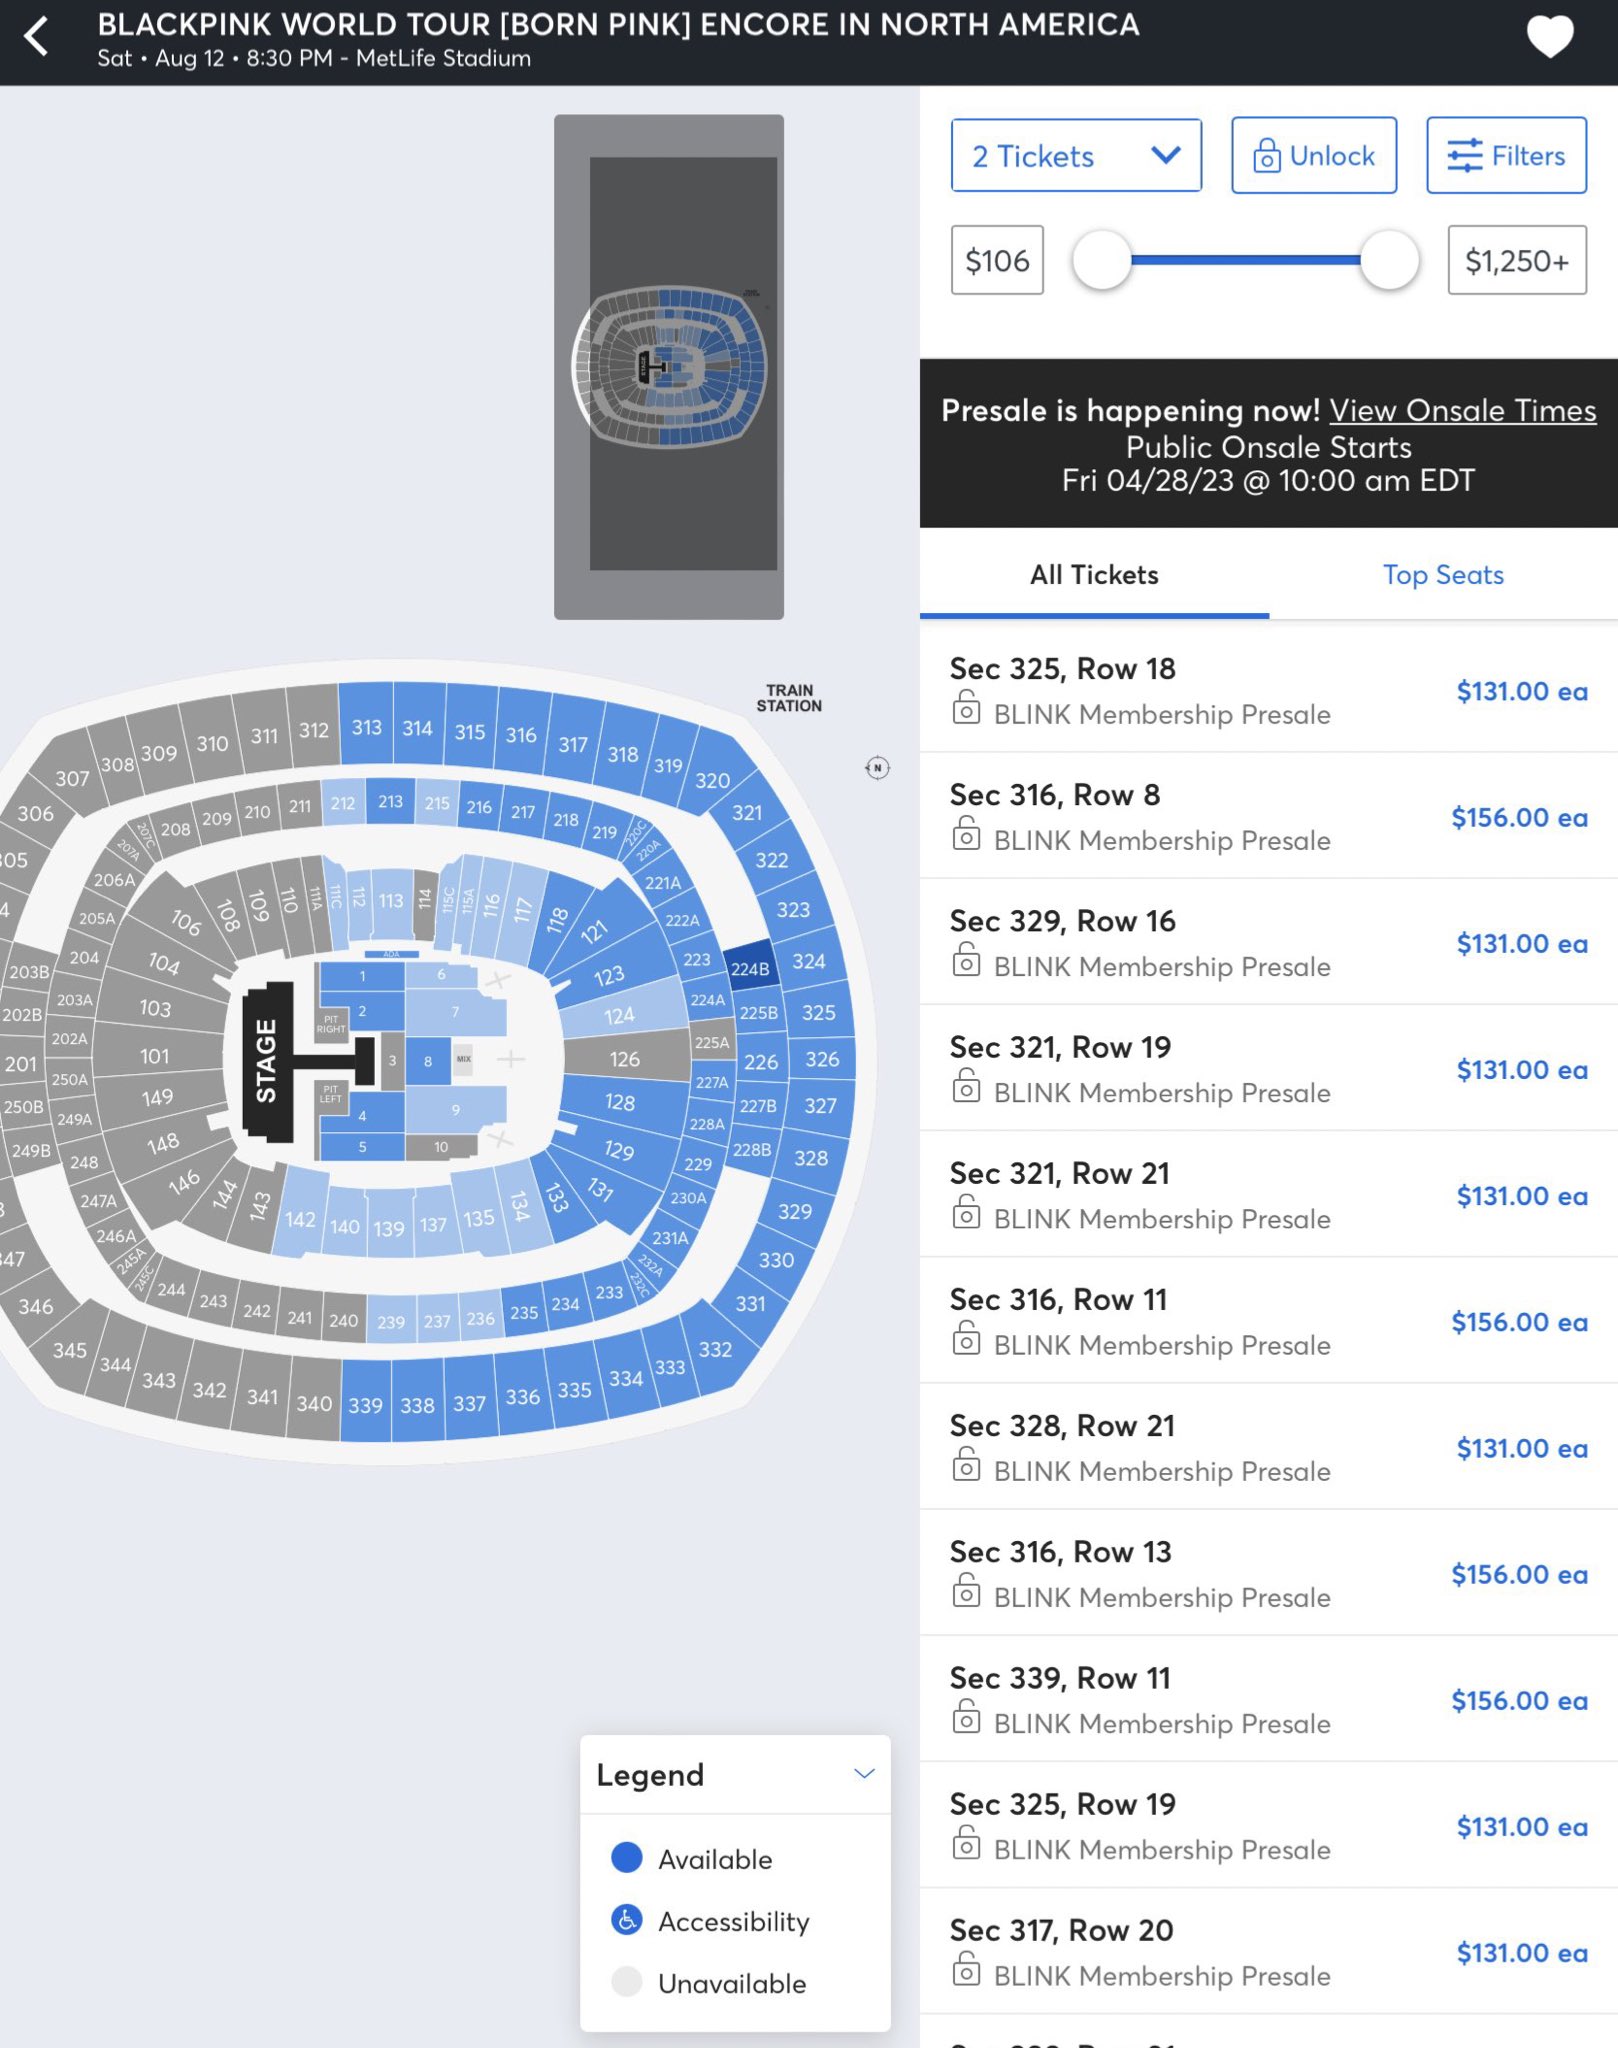 blackpink concert ticket price range